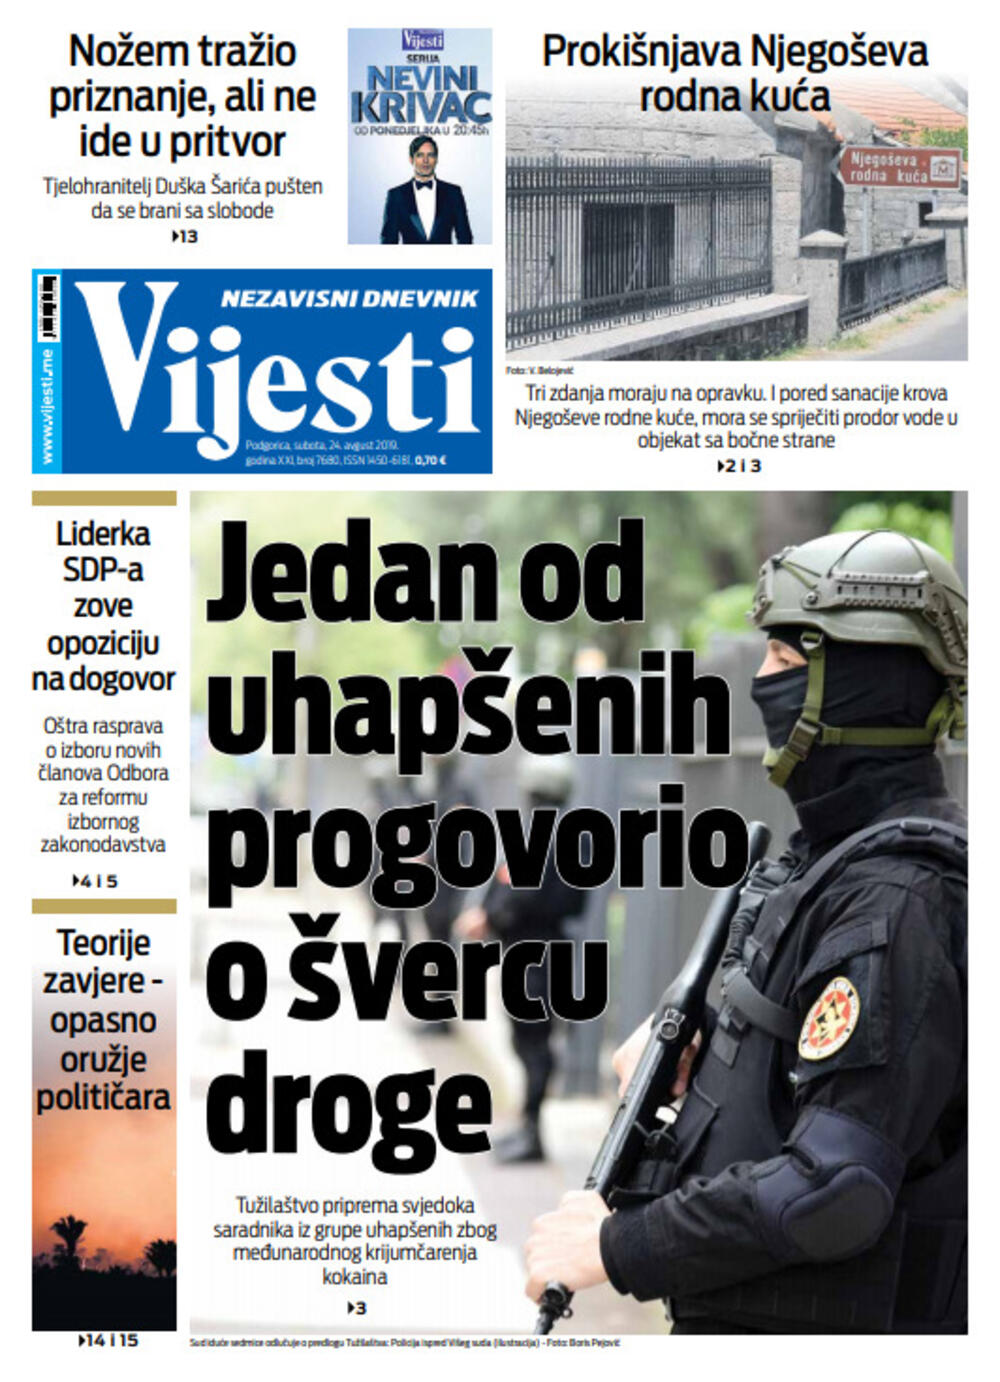 Naslovna strana "Vijesti" za 24. avgust, Foto: Vijesti